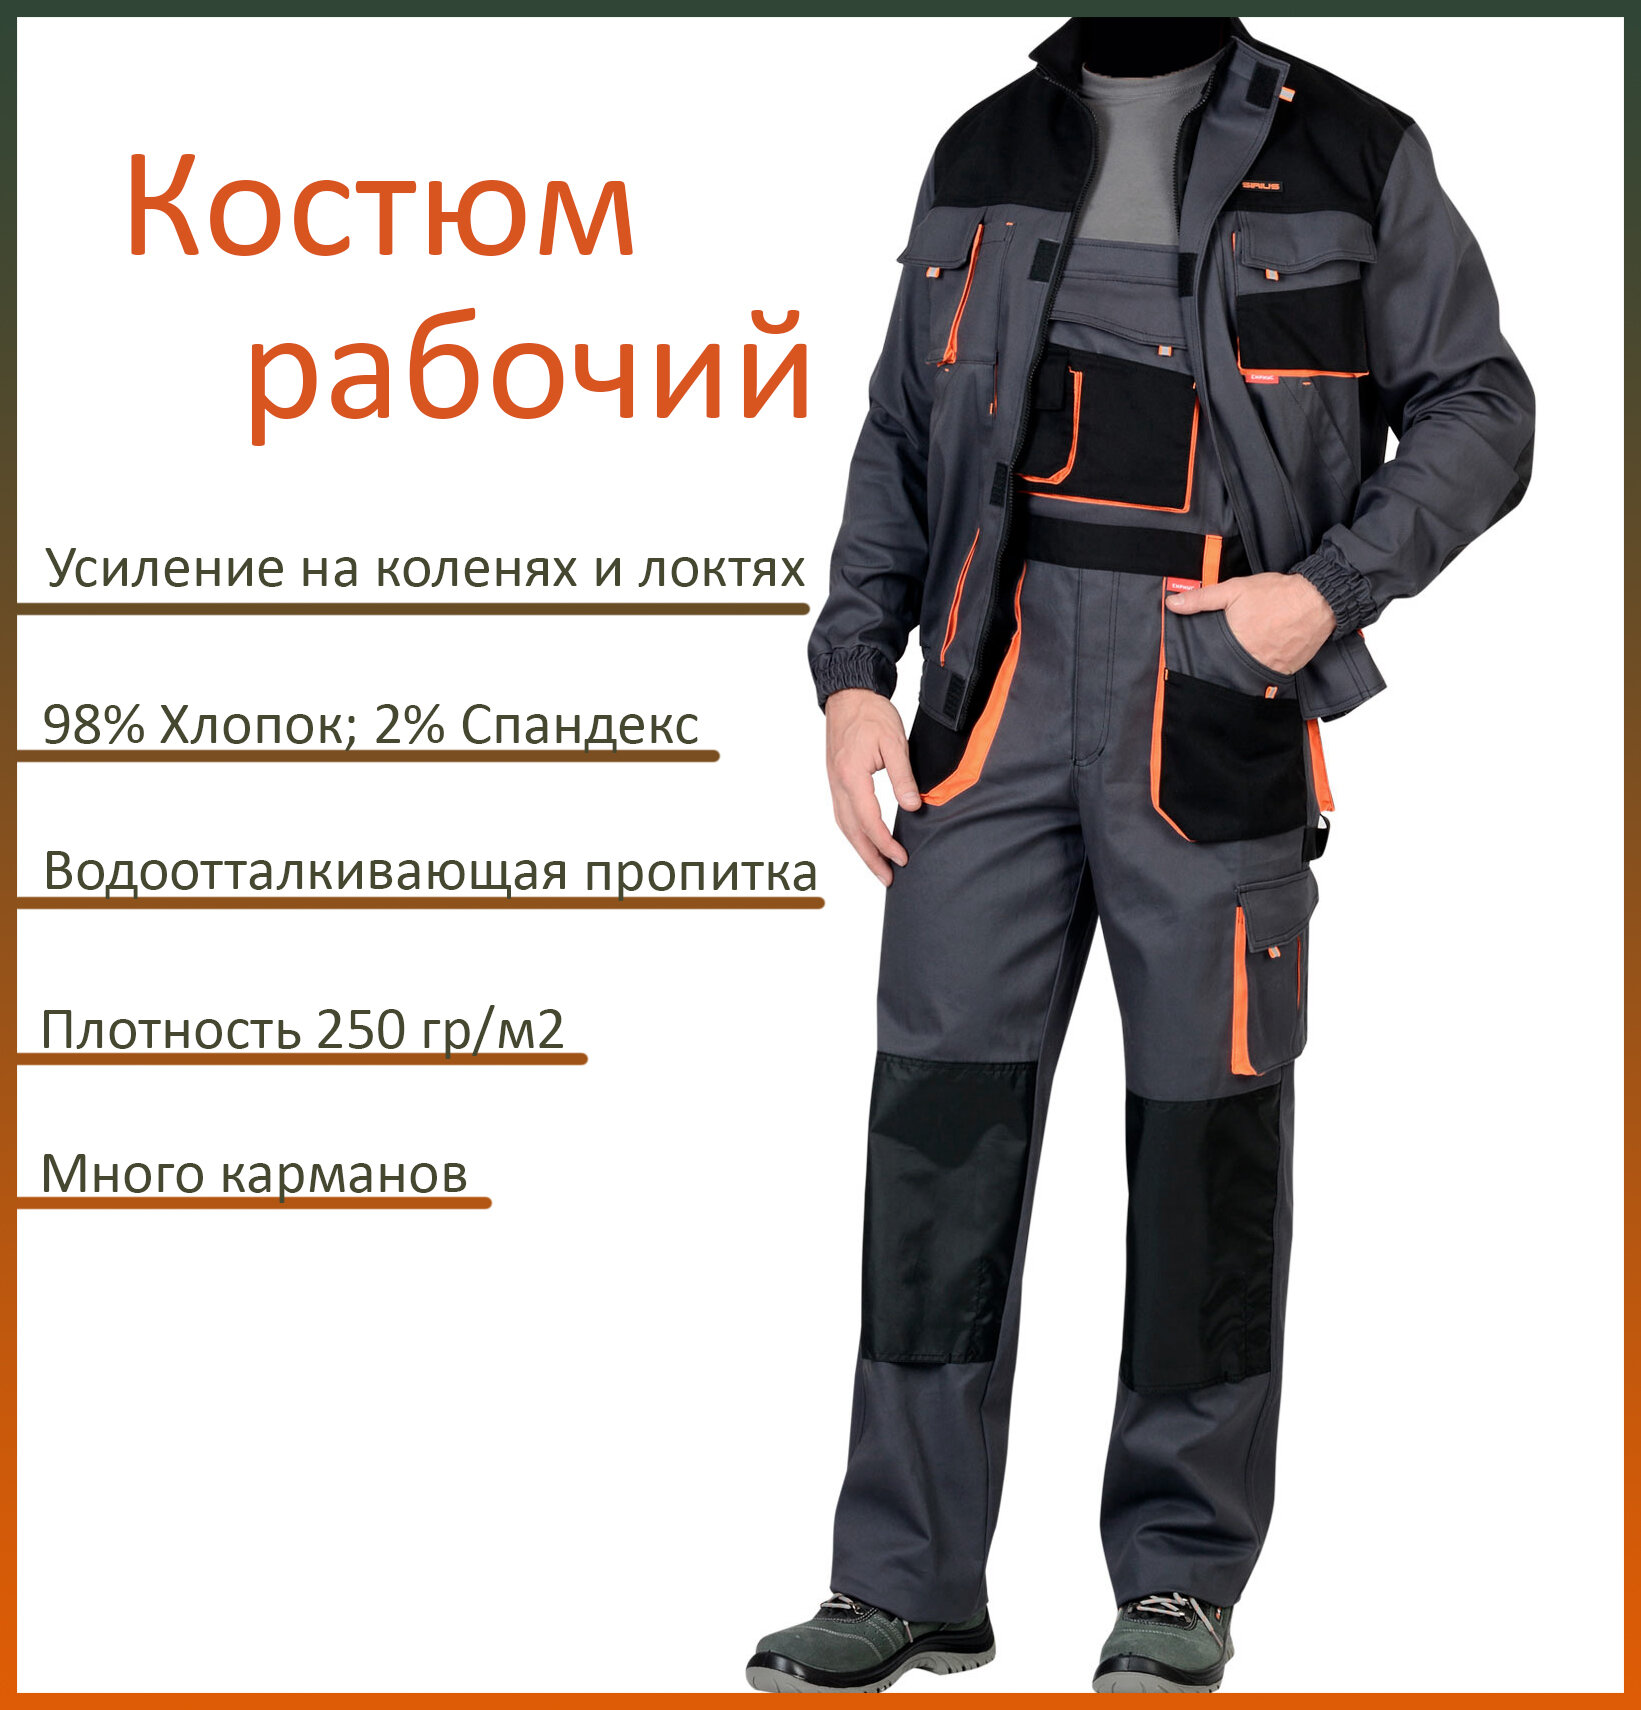 Костюм рабочий арт. 13028/ куртка + полукомбинезон/ серый с оранжевым/ 56-58 рост 170-176